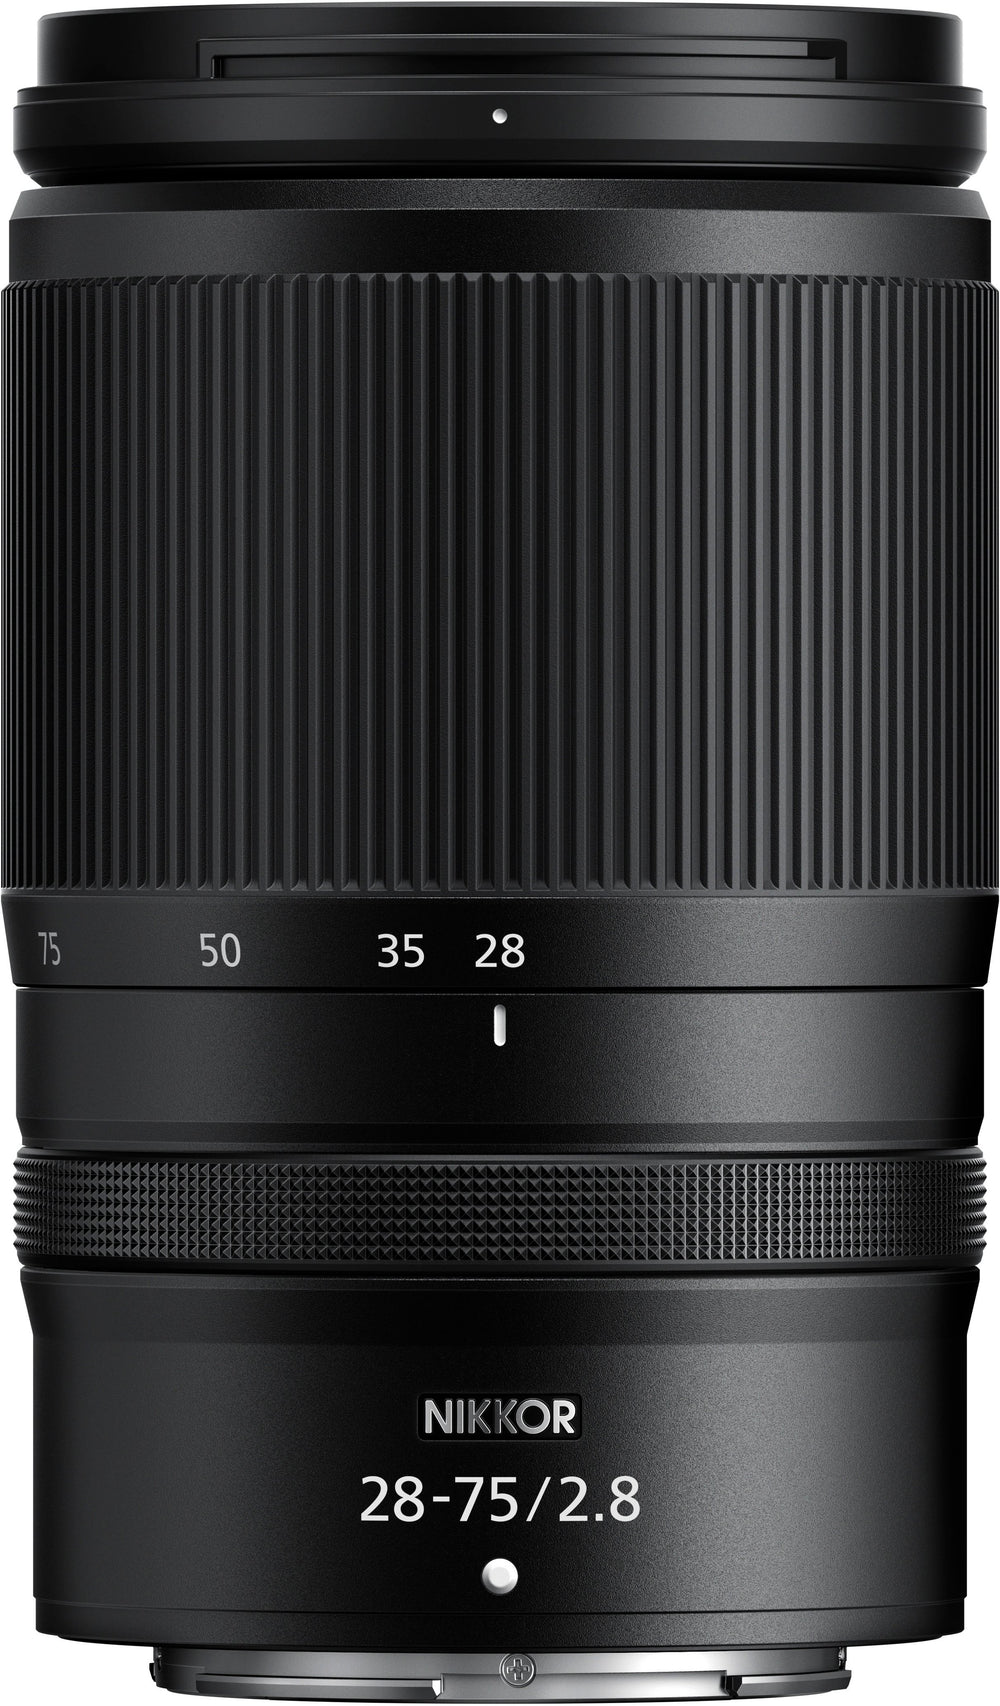 NIKKOR Z 28-75mm f/2.8 Standard Zoom Lens for Nikon Z Cameras - Black_1